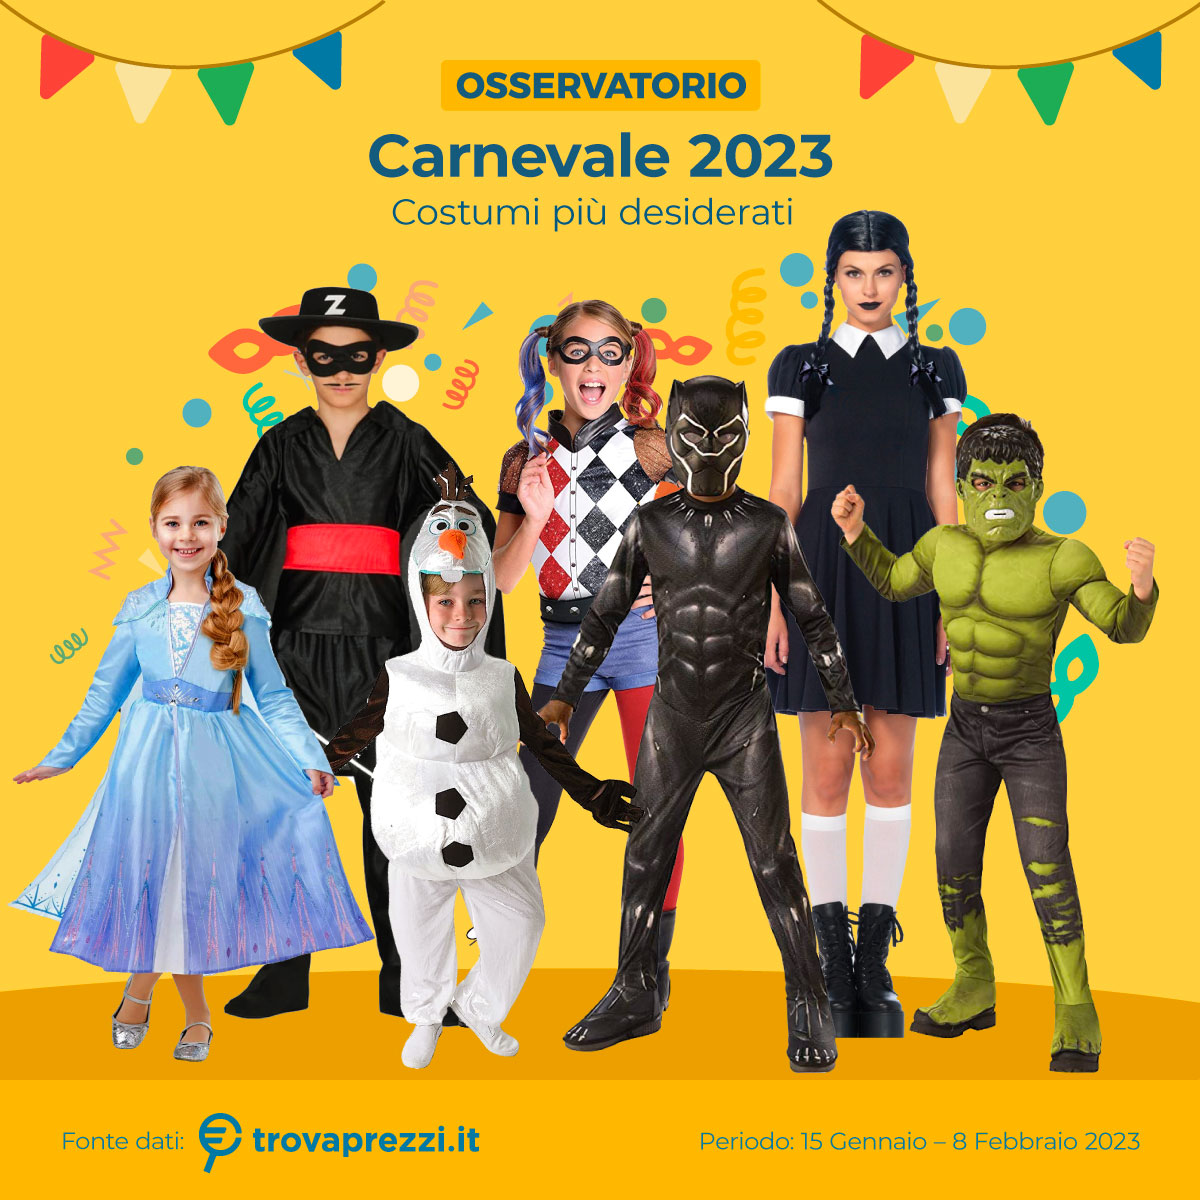 Carnevale, i trend 2023: tra i costumi più ricercati Mercoledì